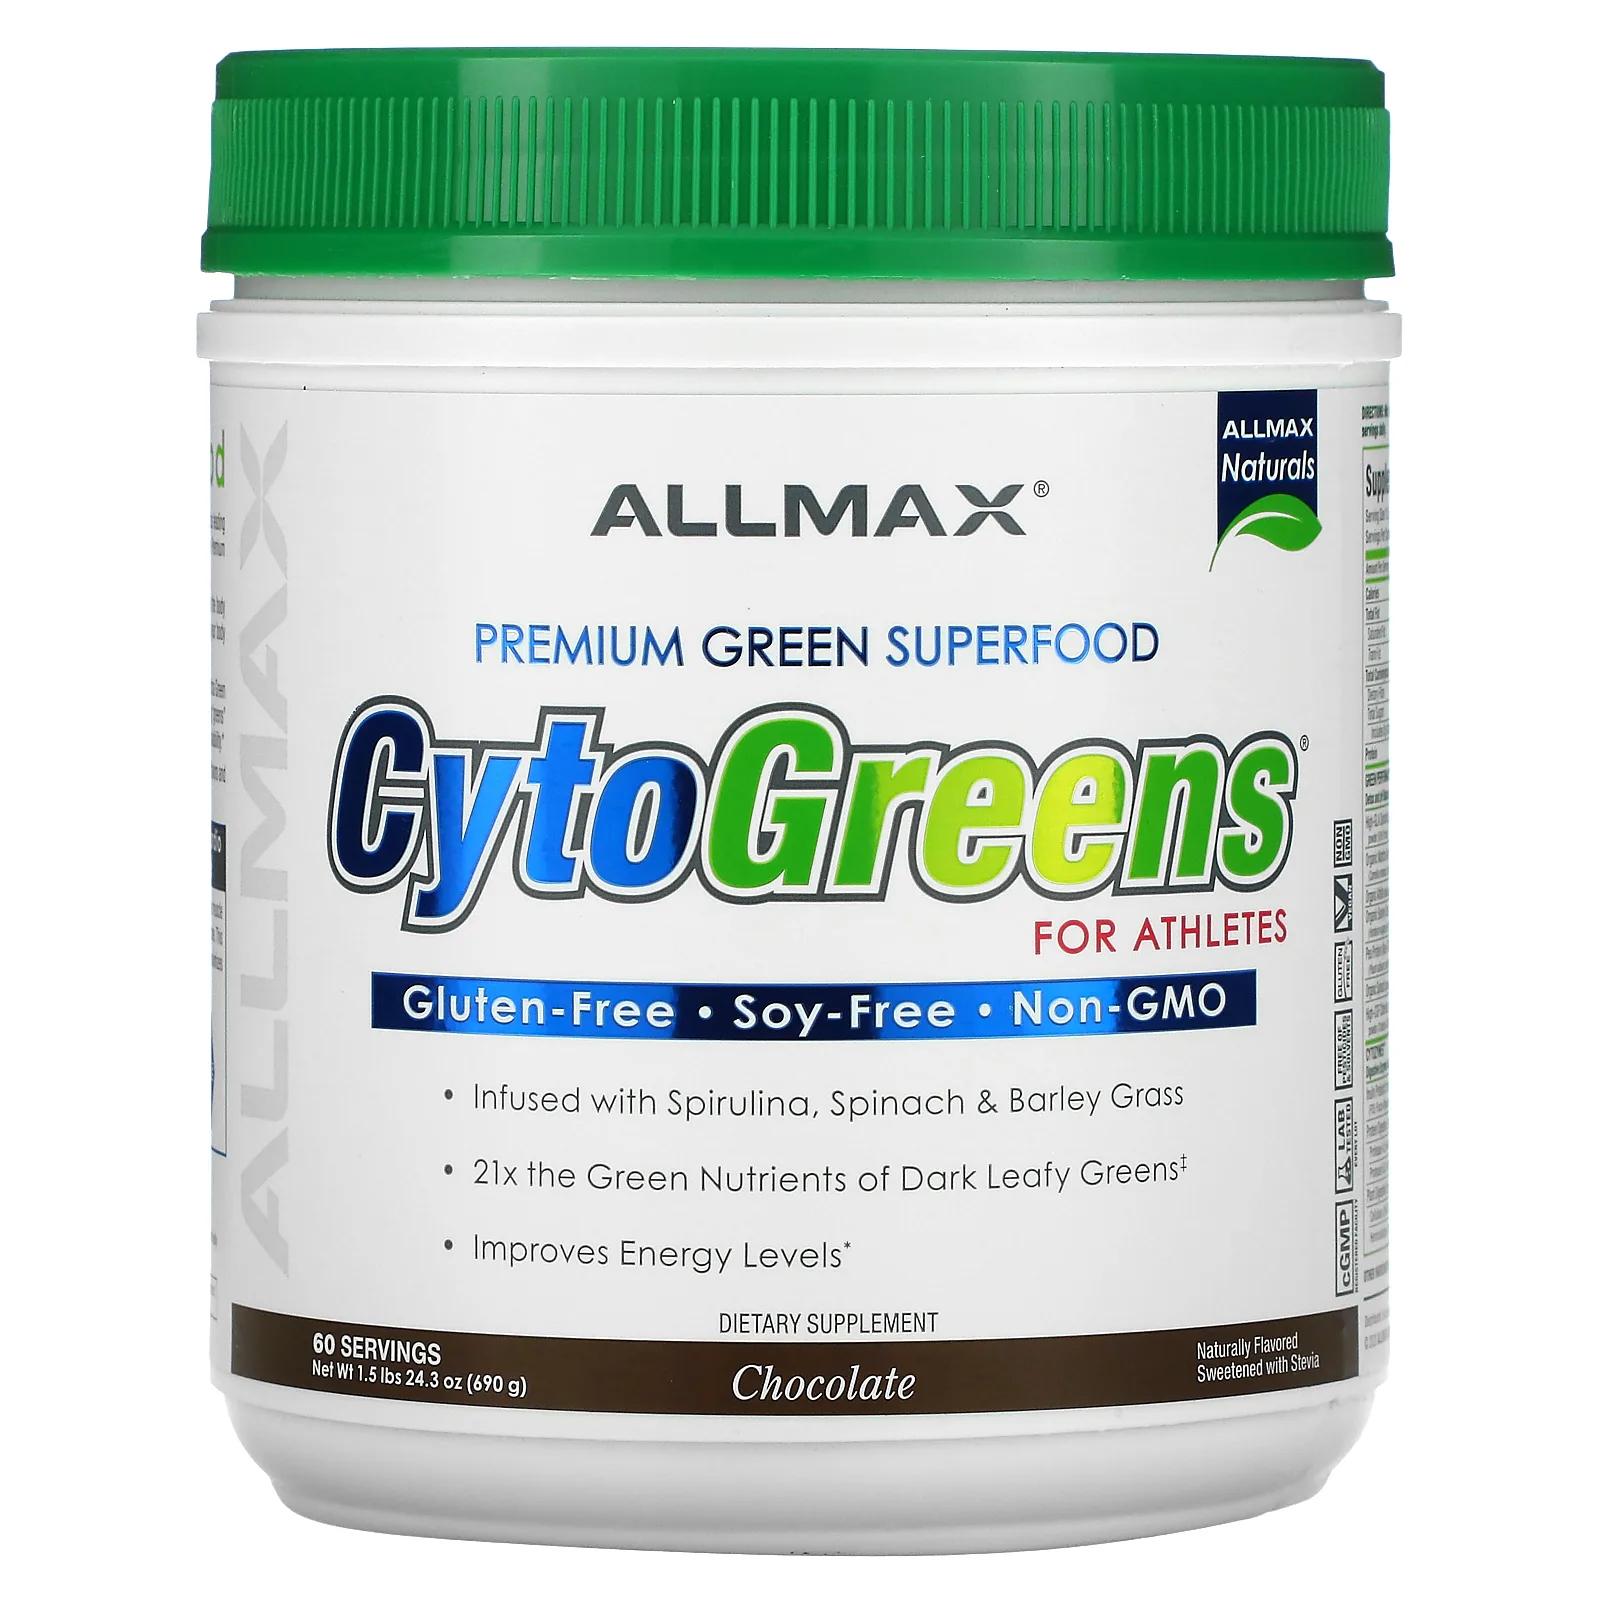 NovaForme CytoGreens премиальный зеленый суперпродукт для спортсменов шоколад 24,3 унц. (690 г) allmax cytogreens зеленый суперфуд премиального качества для спортсменов шоколад 690 г 1 5 фунта